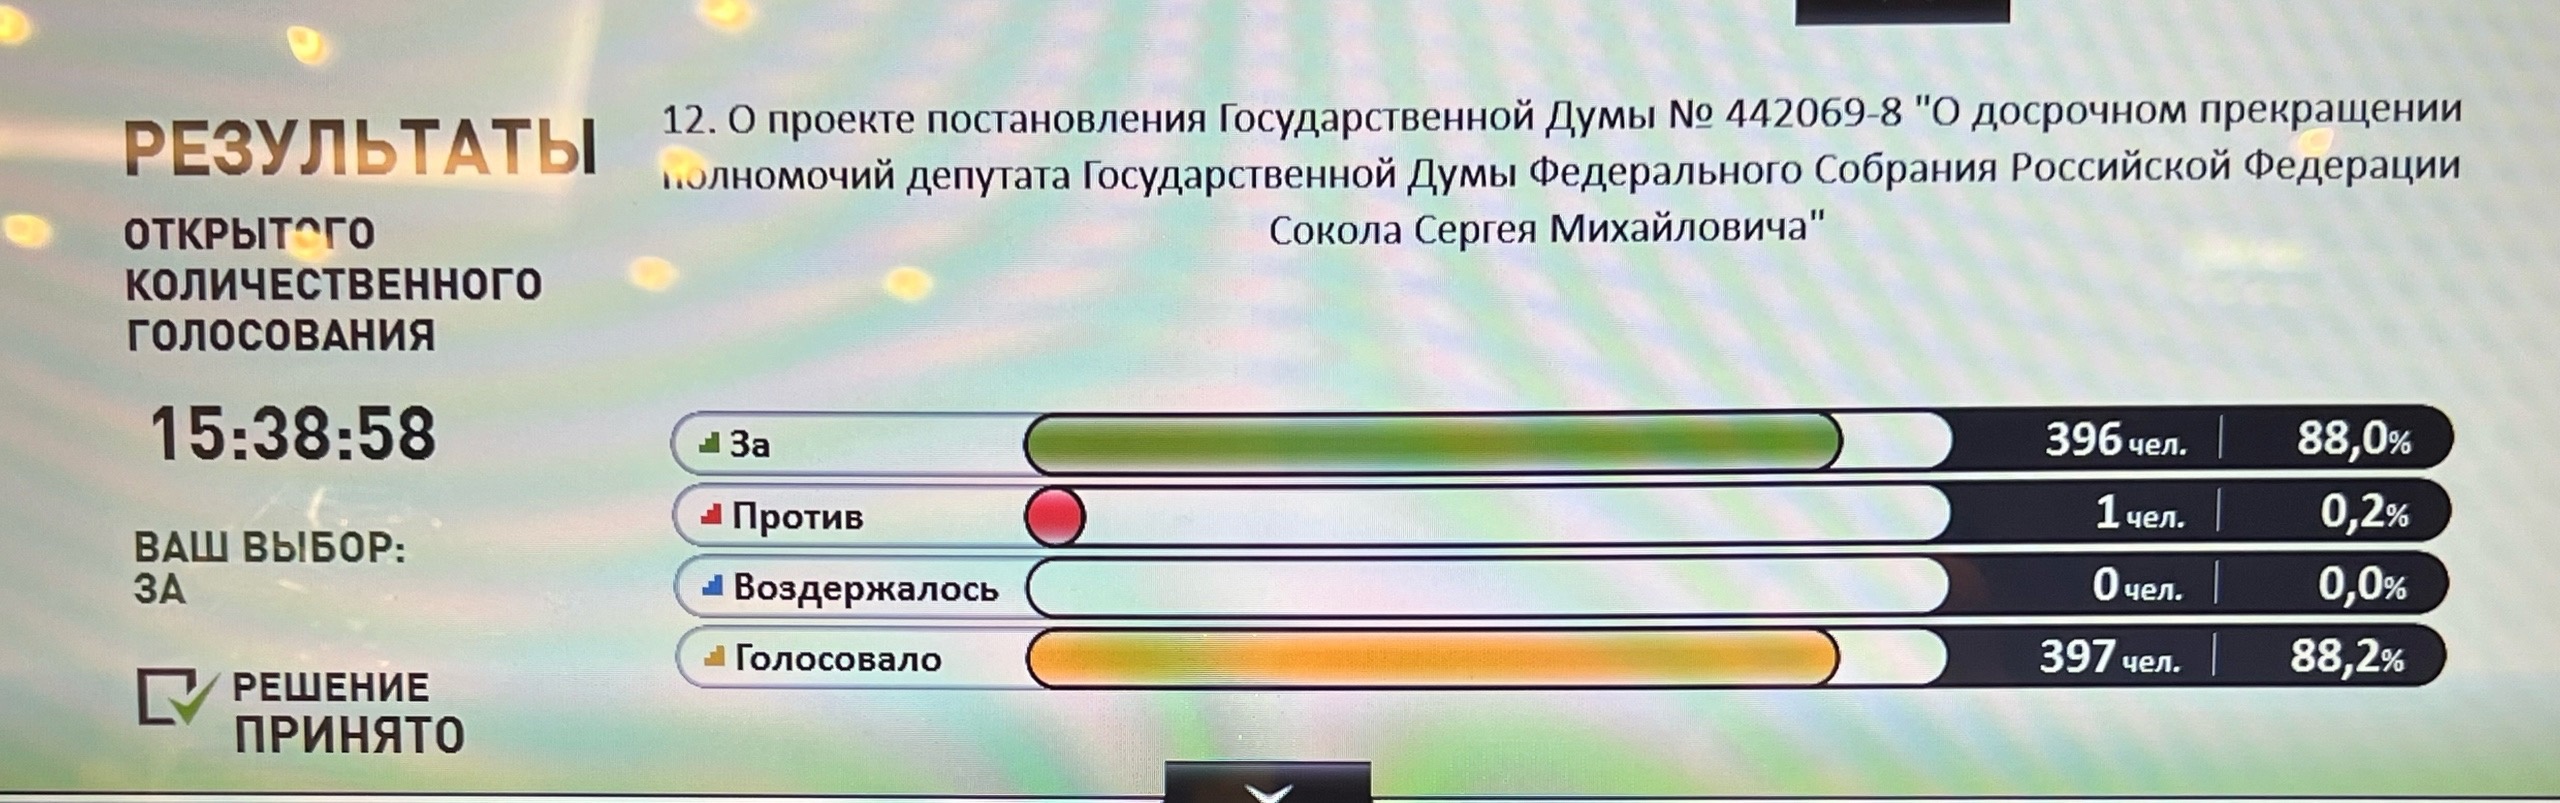 Государственная Дума проголосовала за досрочное прекращение полномочий депутата Сергея Сокола: за 396 голосов, 1 против.